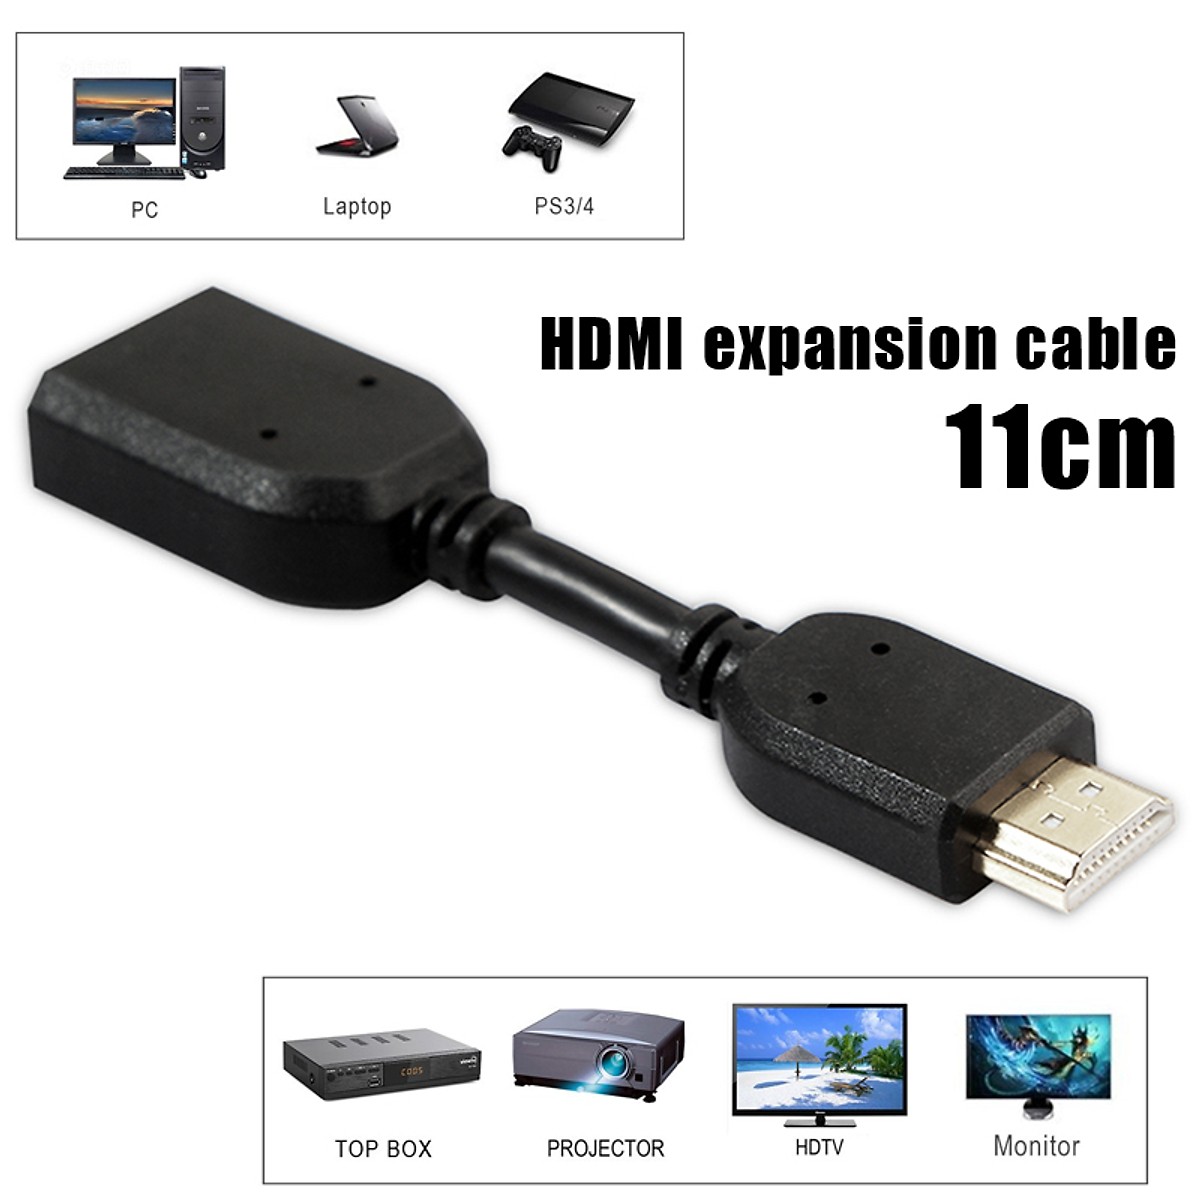 Cáp nối dài HDMI độ phân giải FullHD 1080p - 11cm